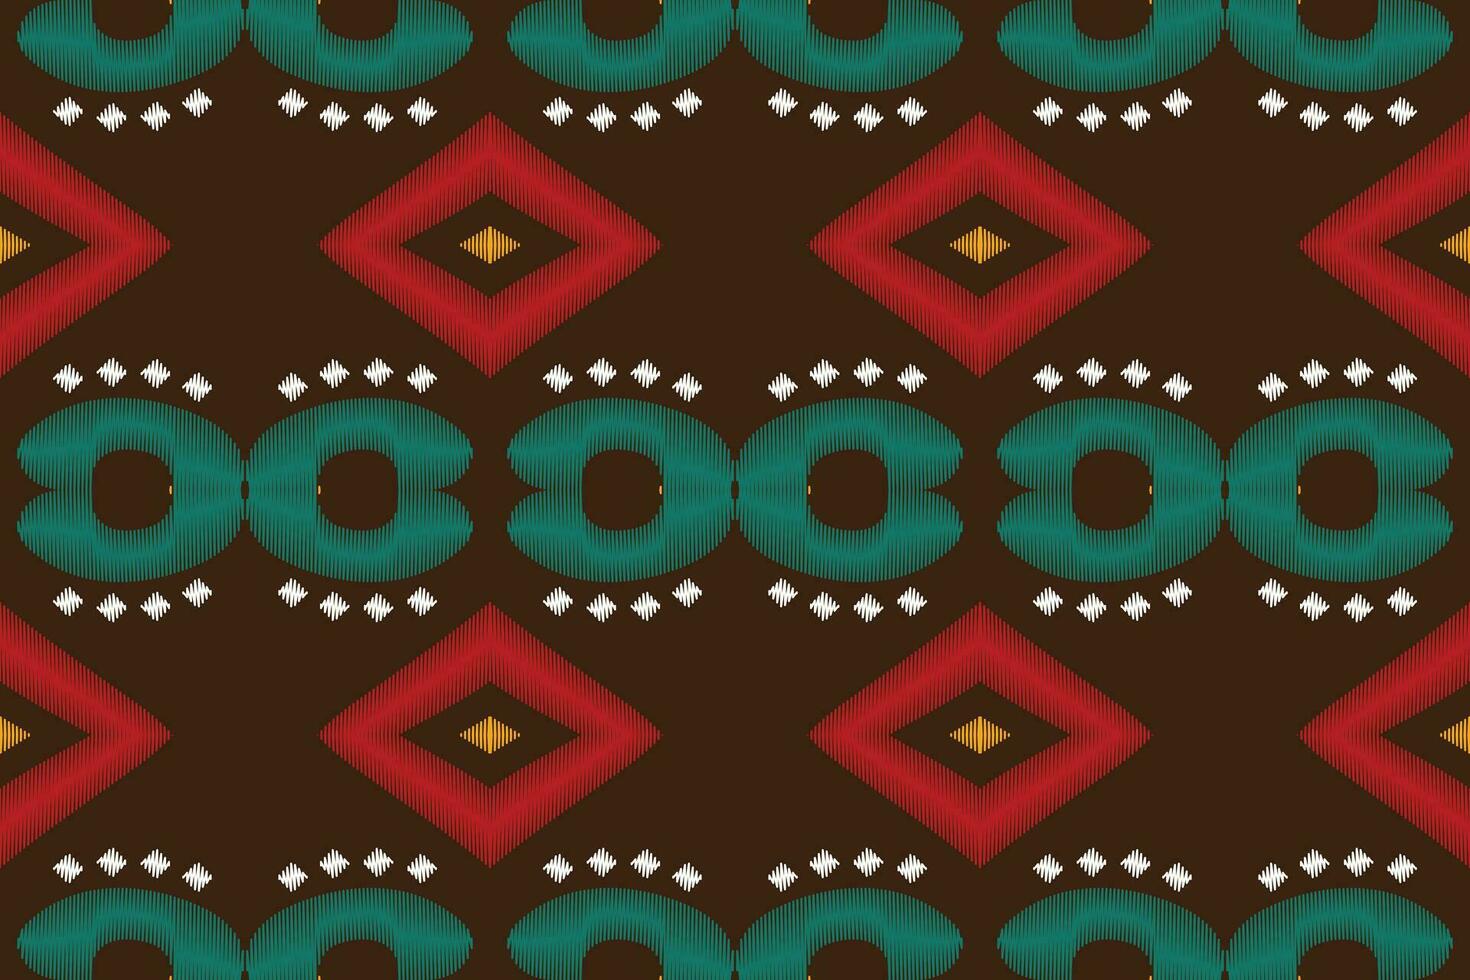 ikat floral paisley bordado fundo. ikat fundo geométrico étnico oriental padronizar tradicional.asteca estilo abstrato vetor ilustração.design textura,tecido,vestuário,embrulho,sarongue.